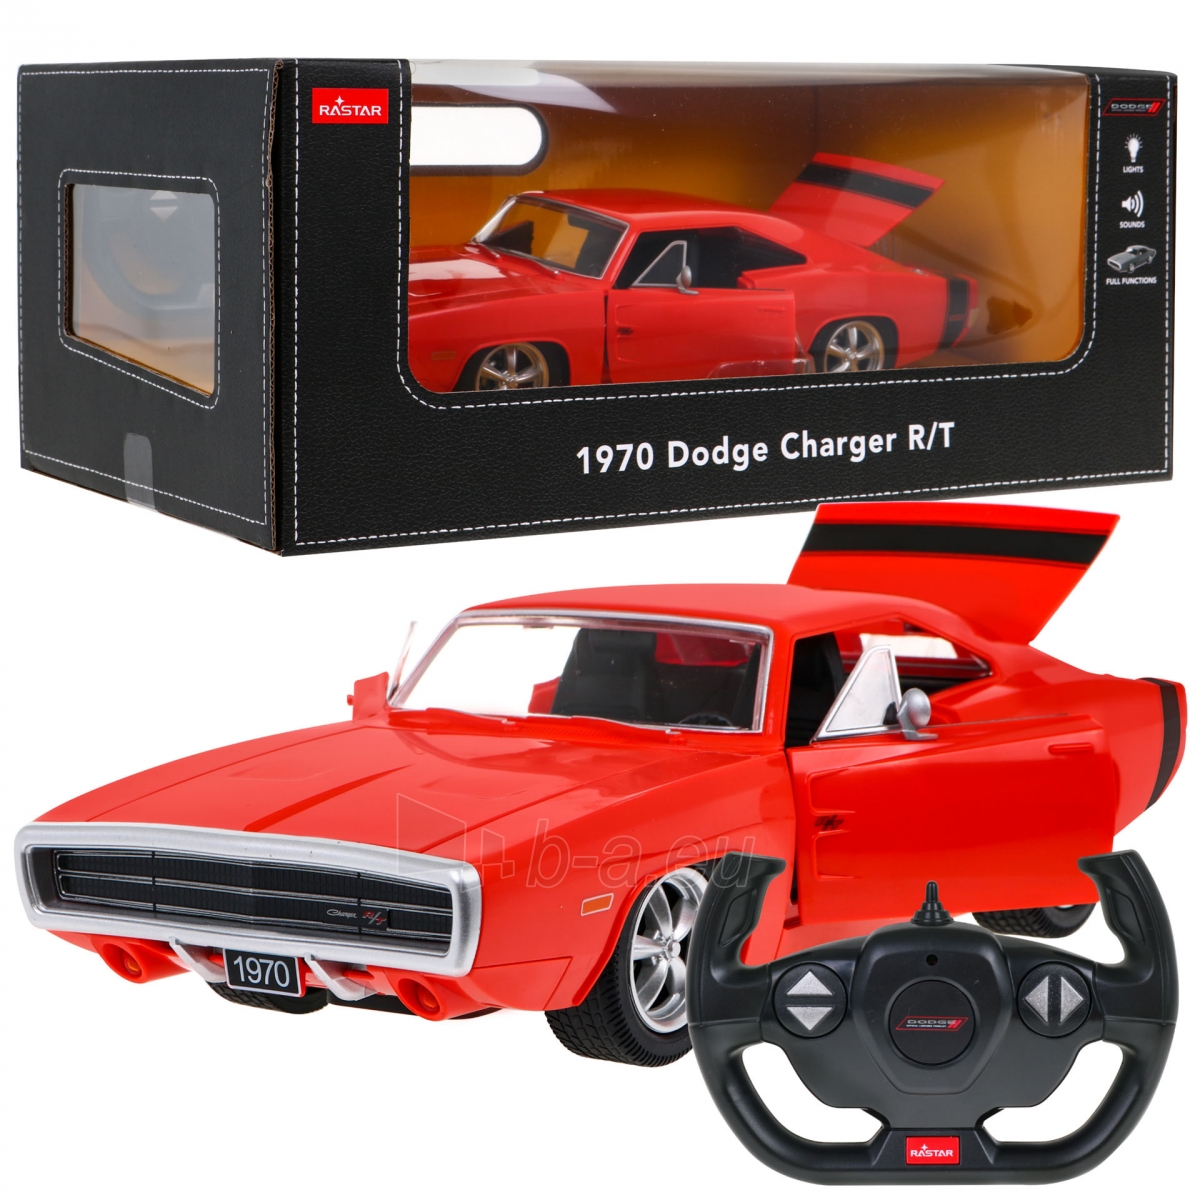 Nuotoliniu būdu valdomas automobilis Dodge Charger, 1:16, raudonas paveikslėlis 1 iš 9